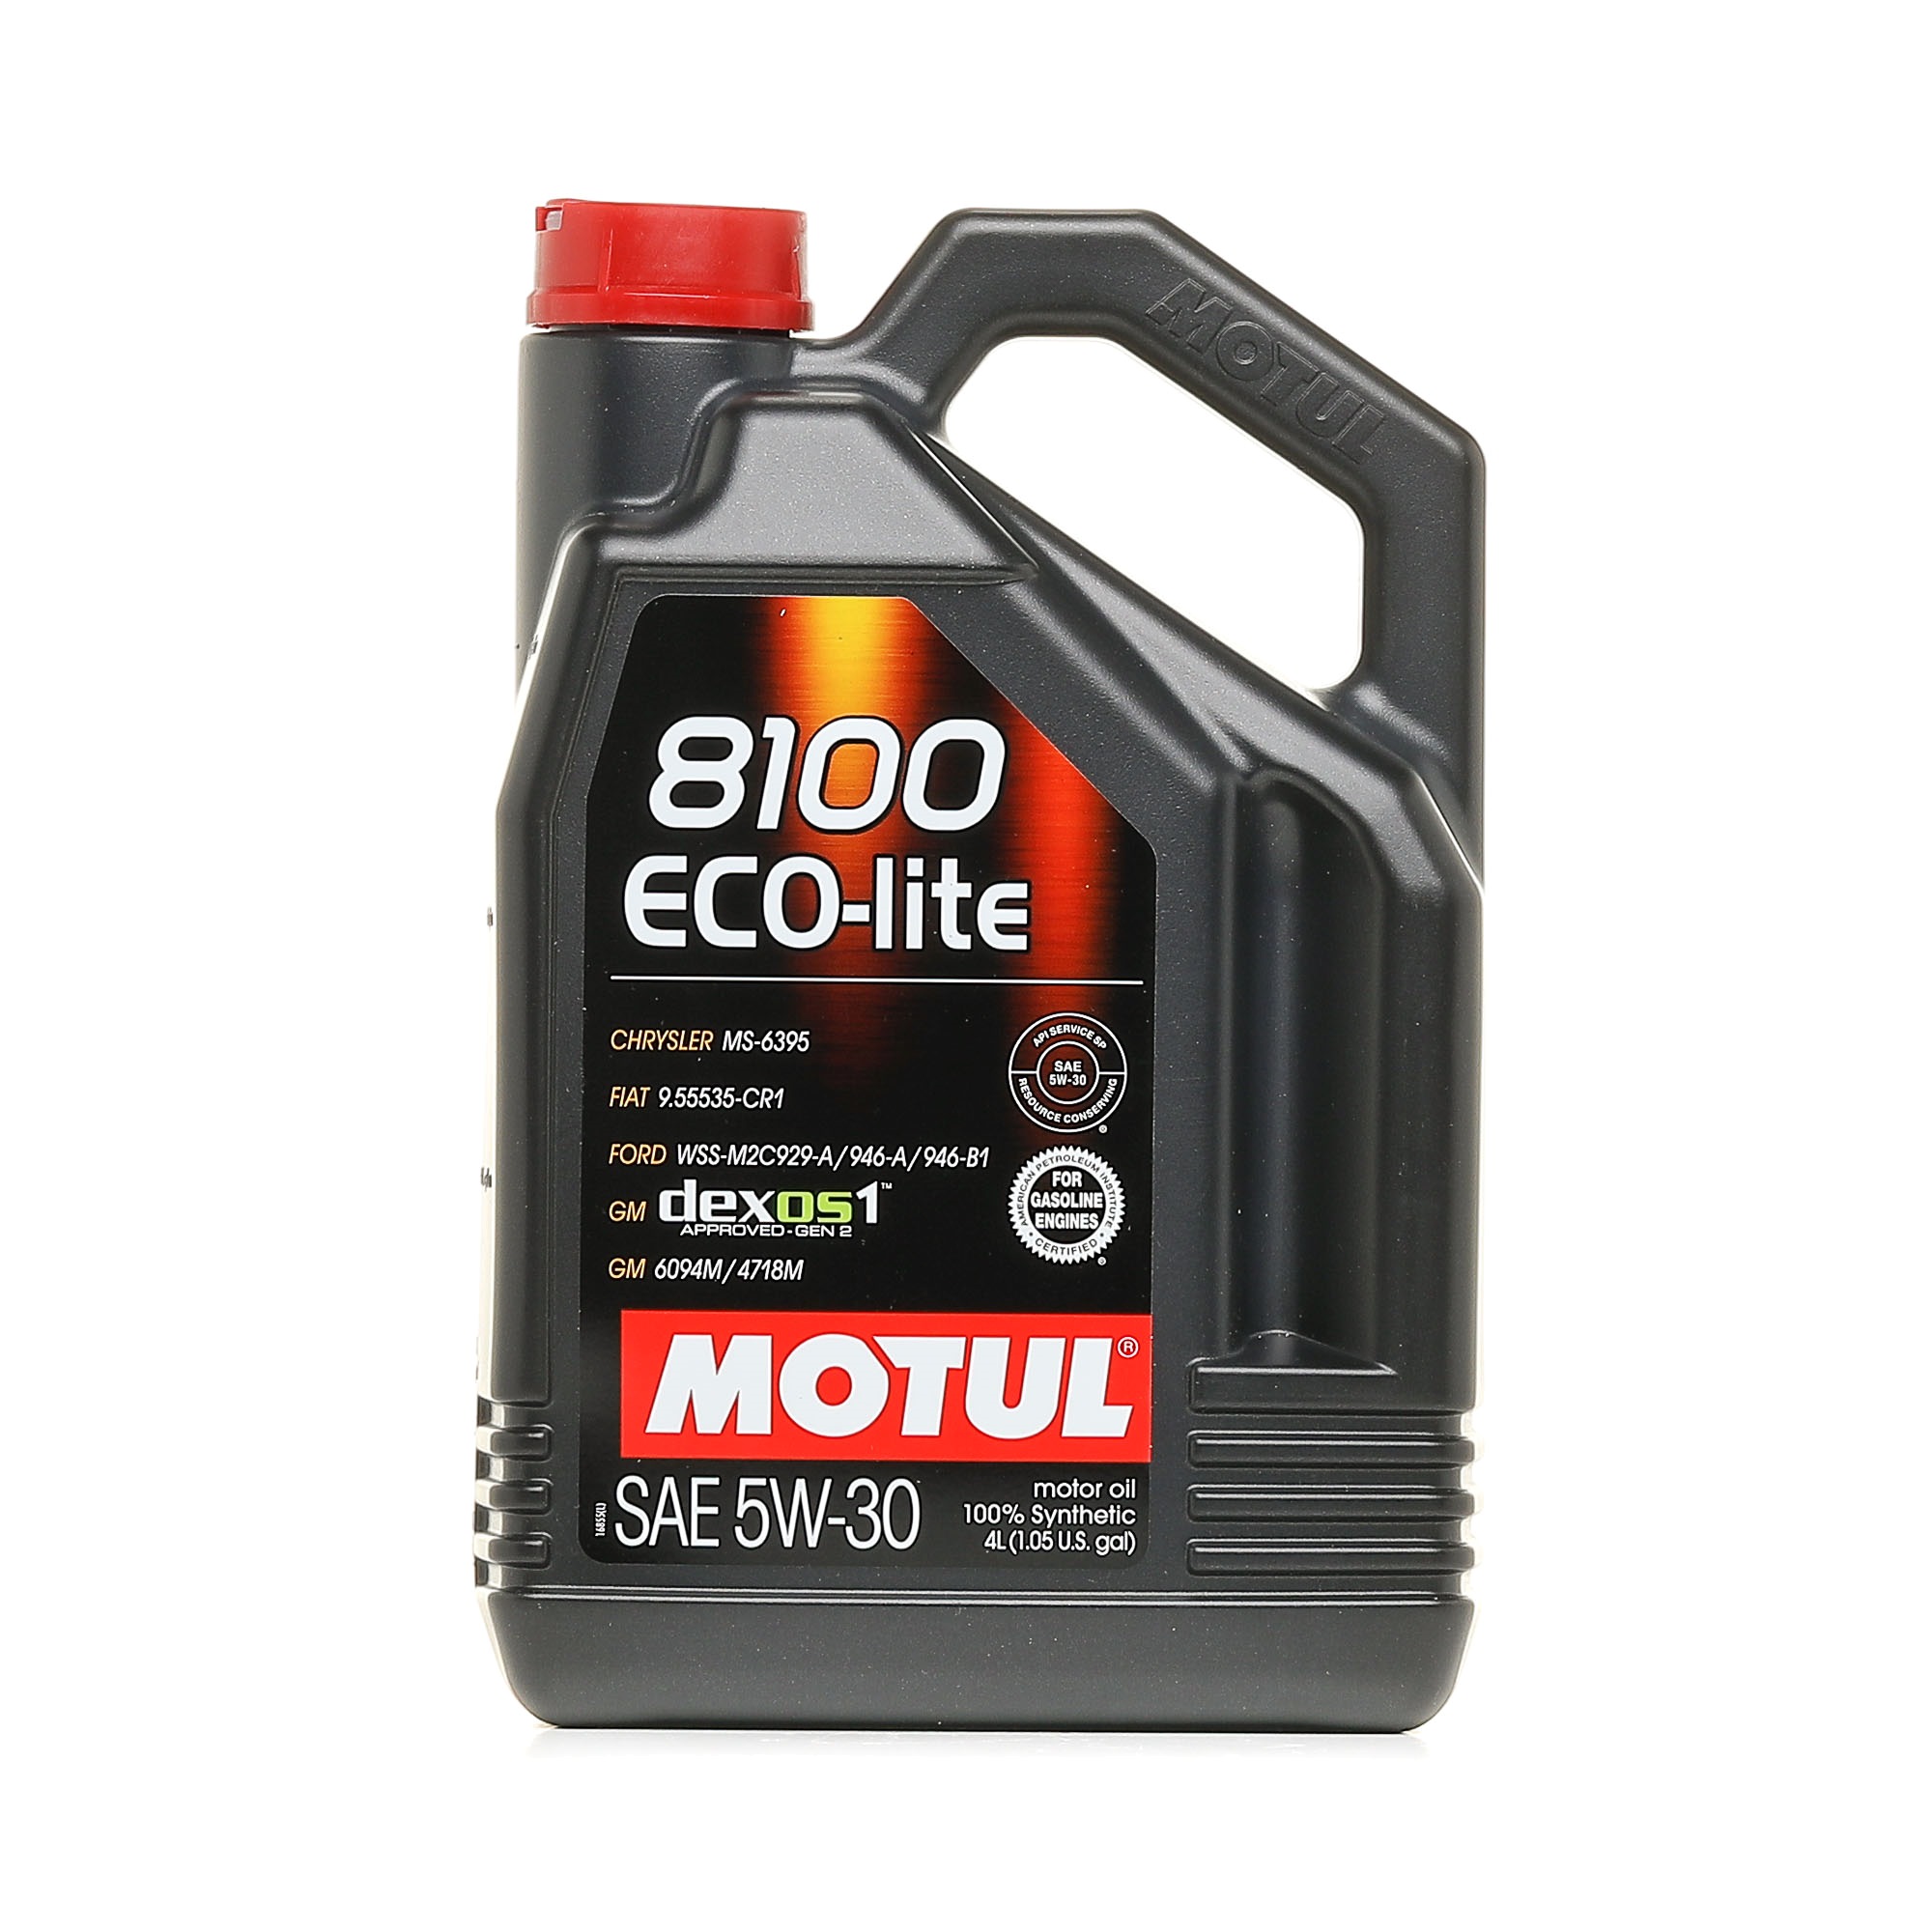 MOTUL 5W-30, 4l, Synthetic Oil Motor oil 107251 buy